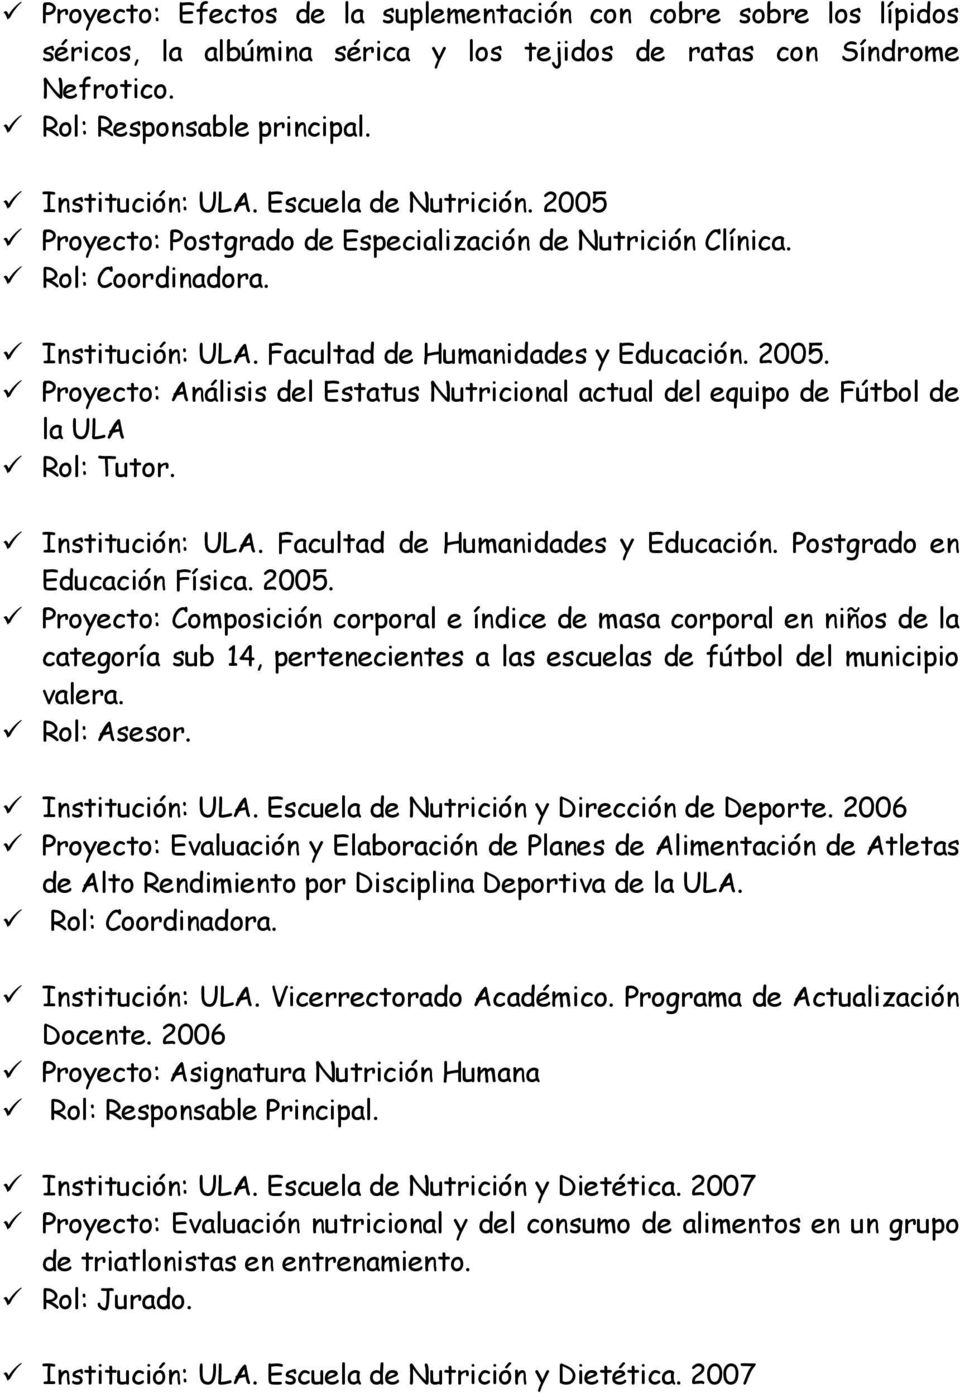 Facultad de Humanidades y Educación. Postgrado en Educación Física. 2005.